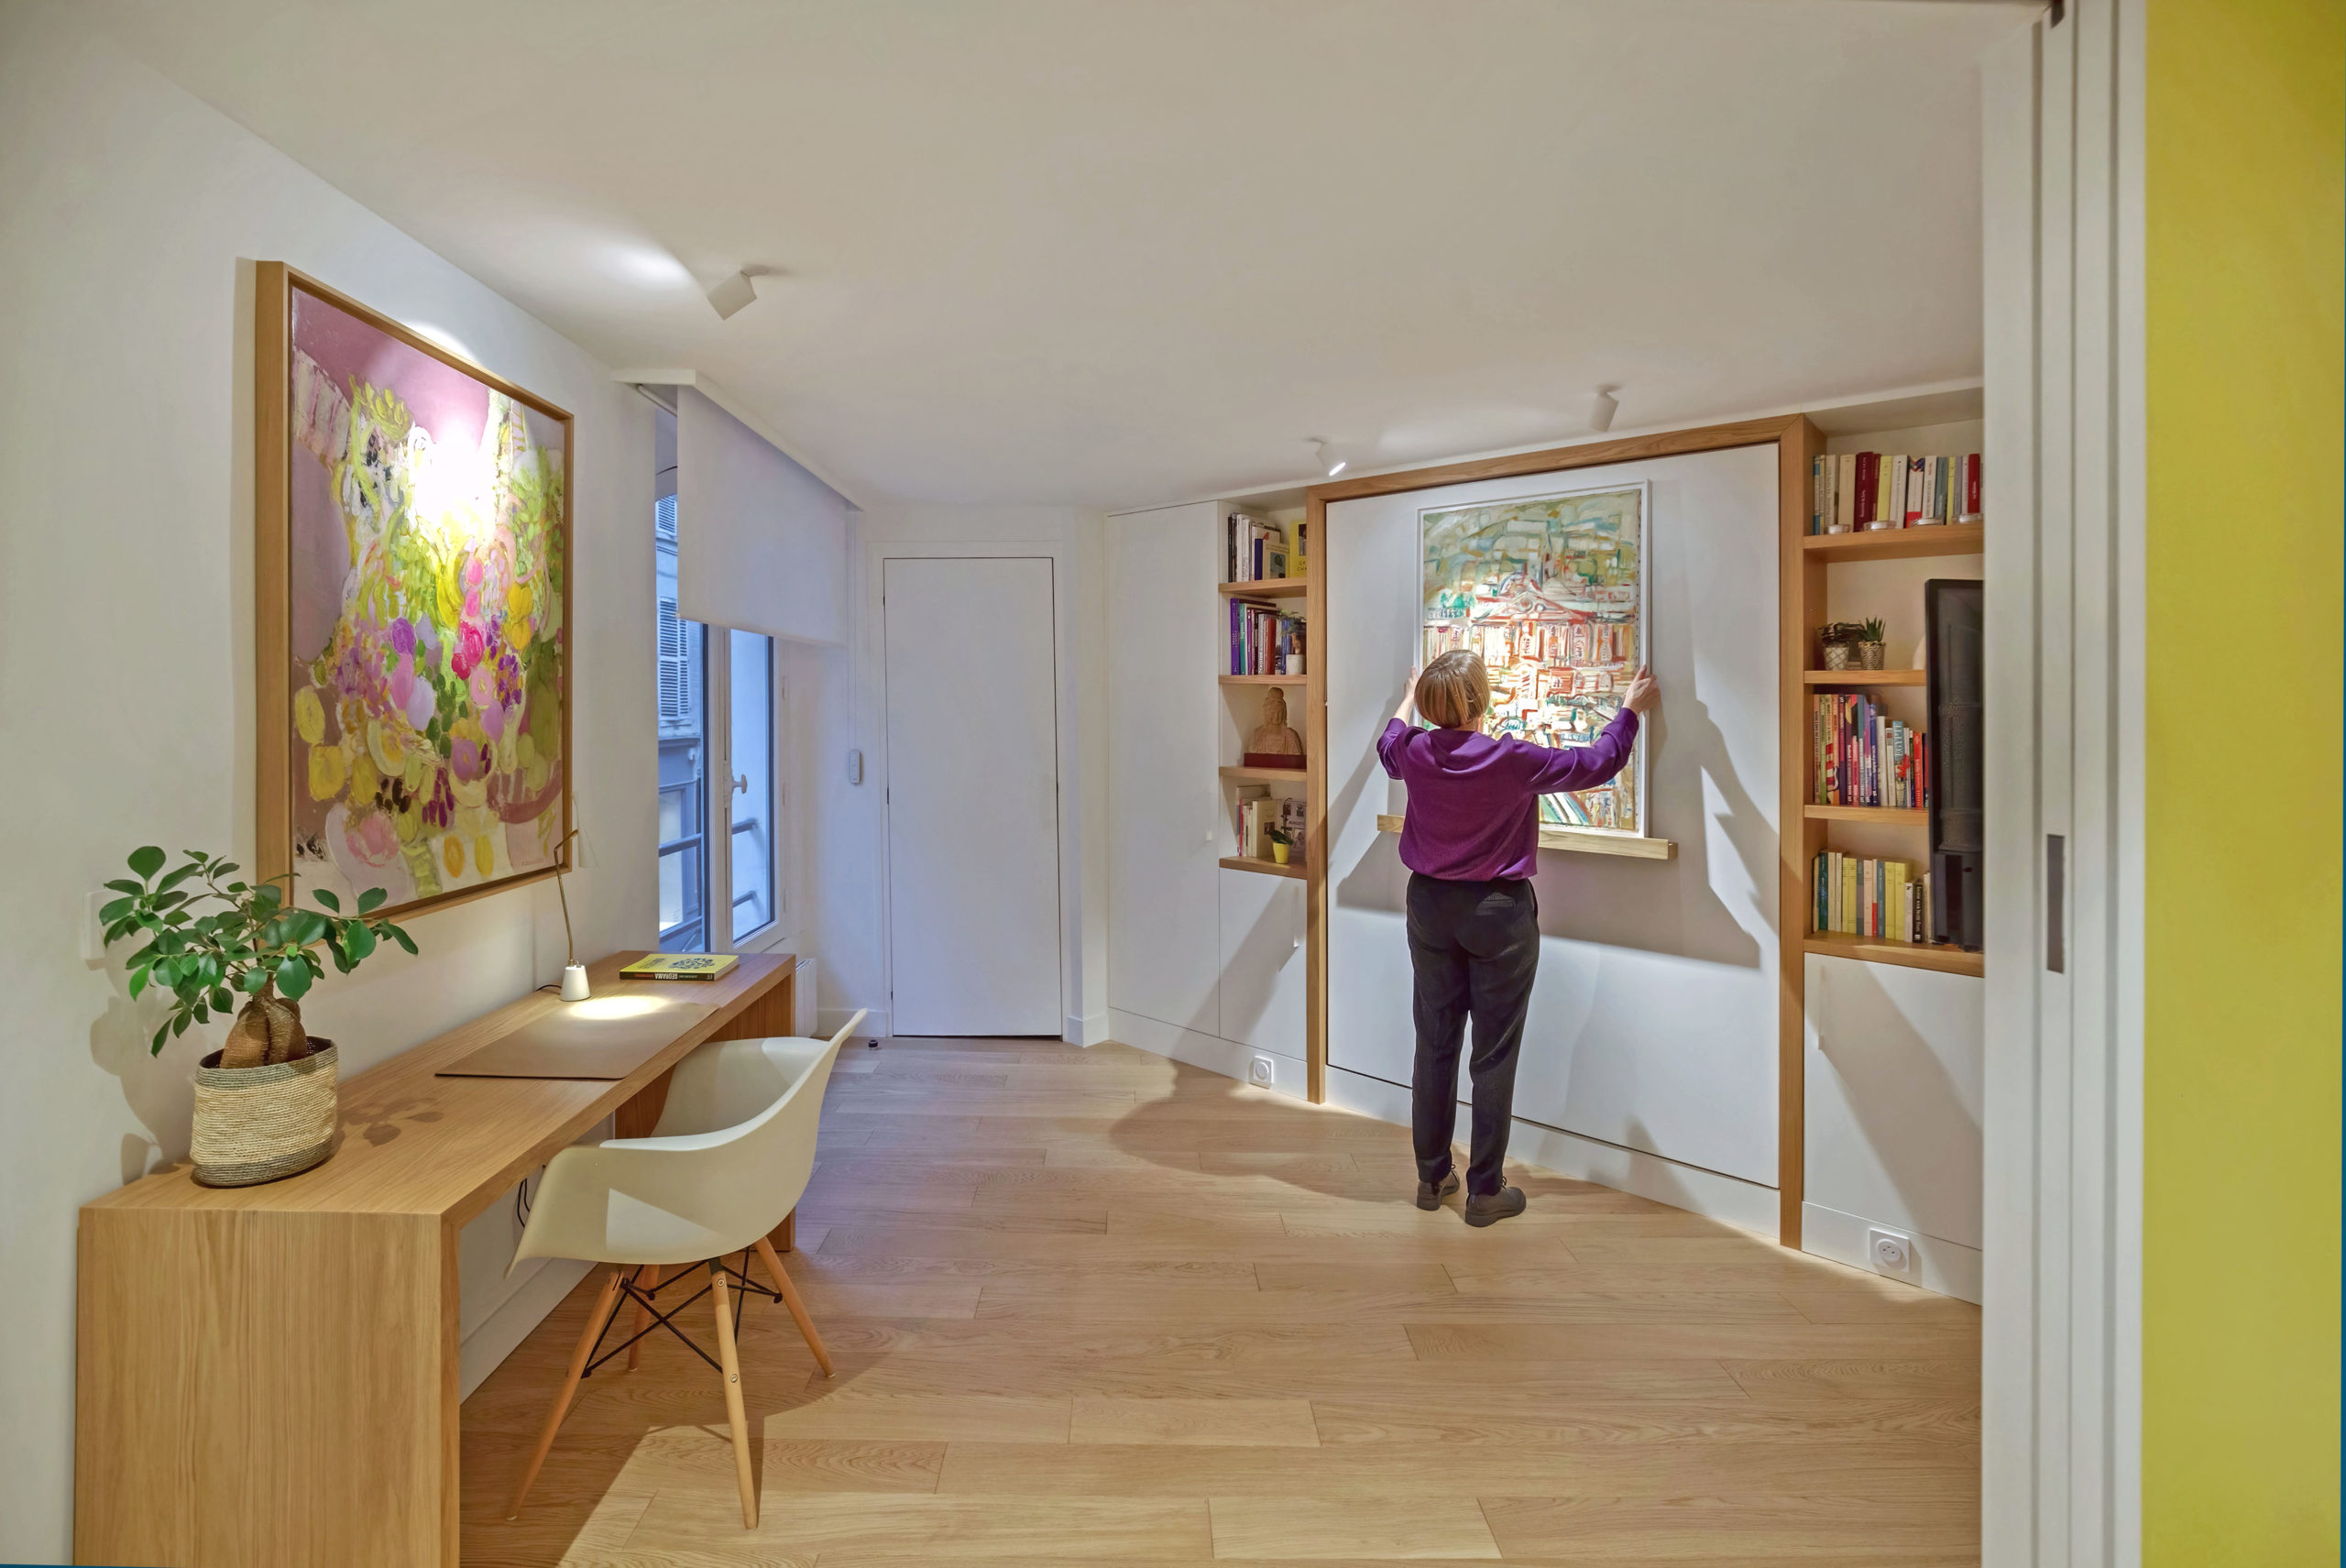 Chambre d'amis appartement pied à terre parisien - Flora Auvray Architecte d'intérieur